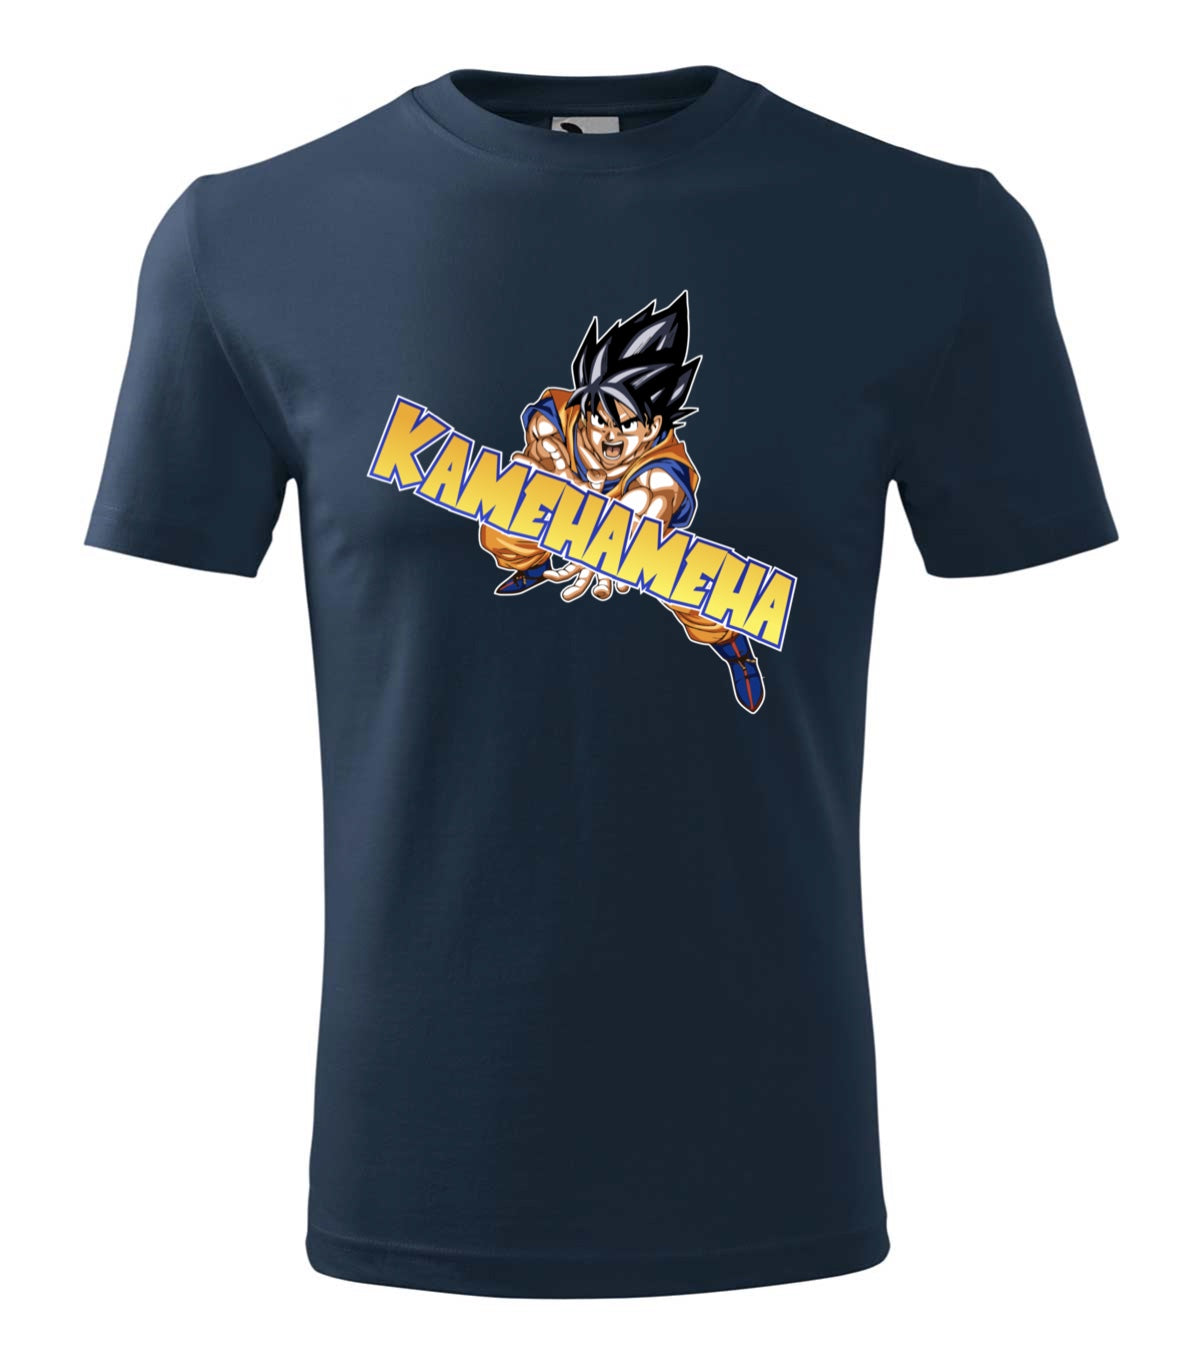 Kamehameha gyerek technikai póló